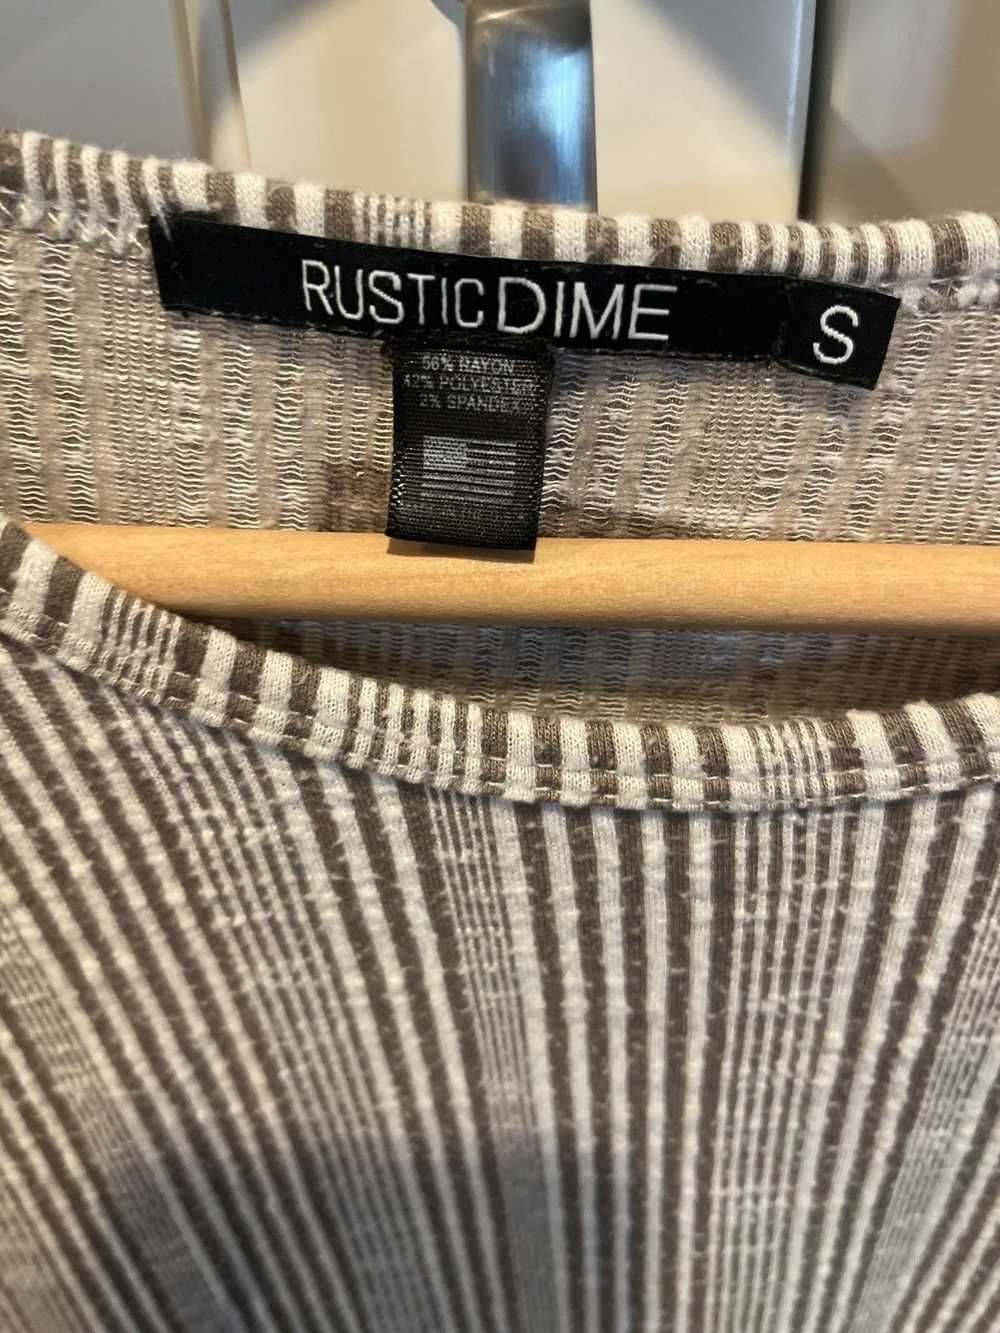 Rustic Dime Rustic Dime “Brush Ridged Shirt” - image 2